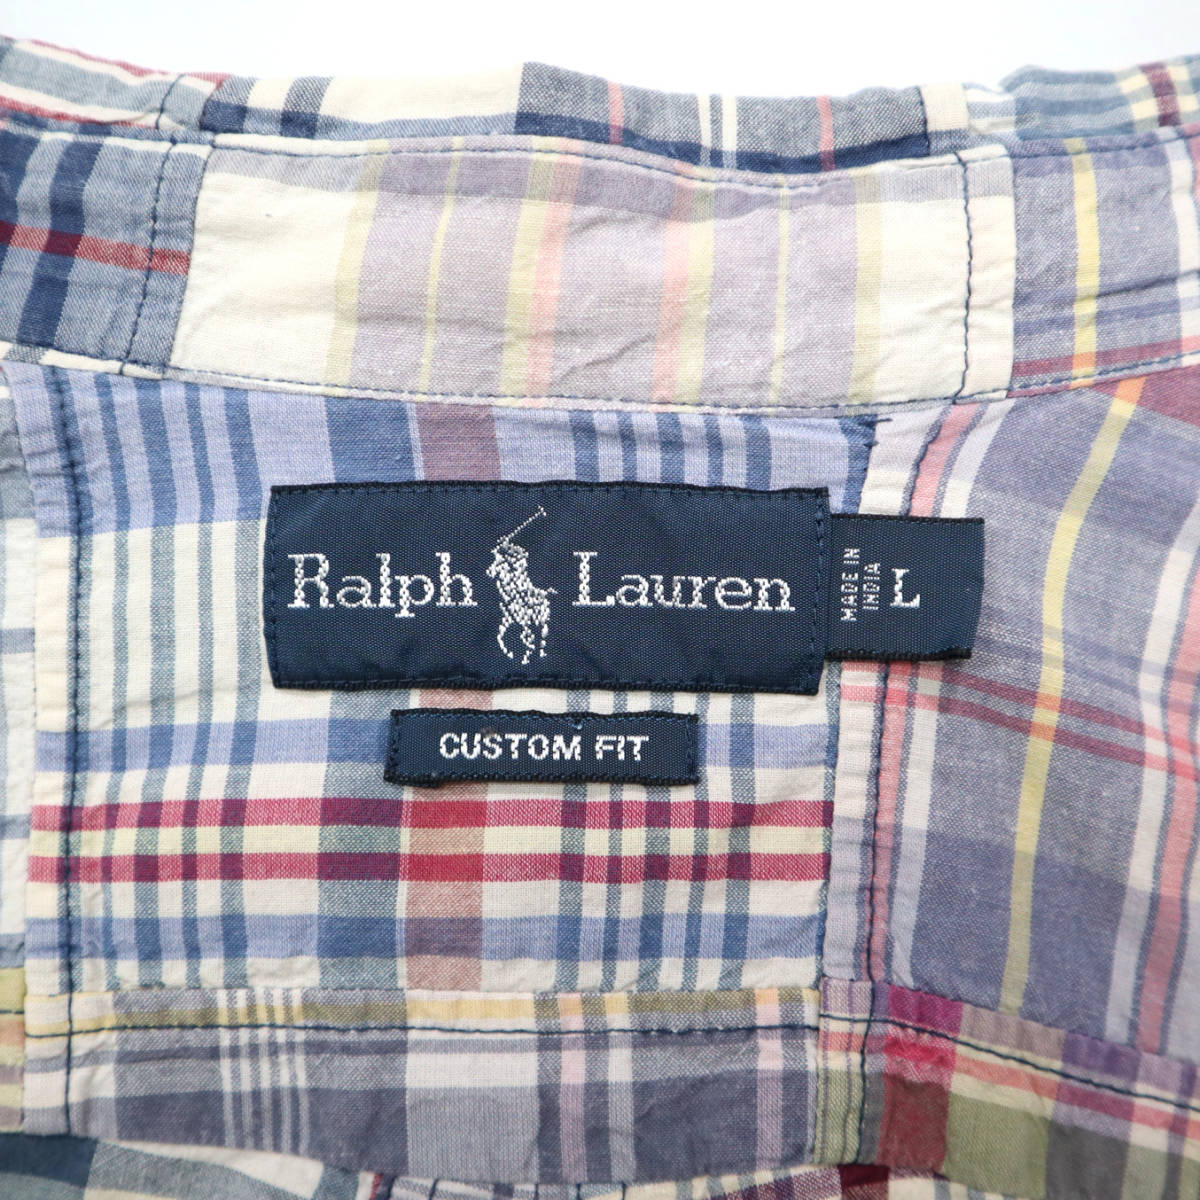 90s Vintage RALPH LAUREN Ralph Lauren Индия хлопок лоскутное шитье кнопка down рубашка с коротким рукавом CUSTOM FIT 90 годы б/у одежда мужской L American Casual 